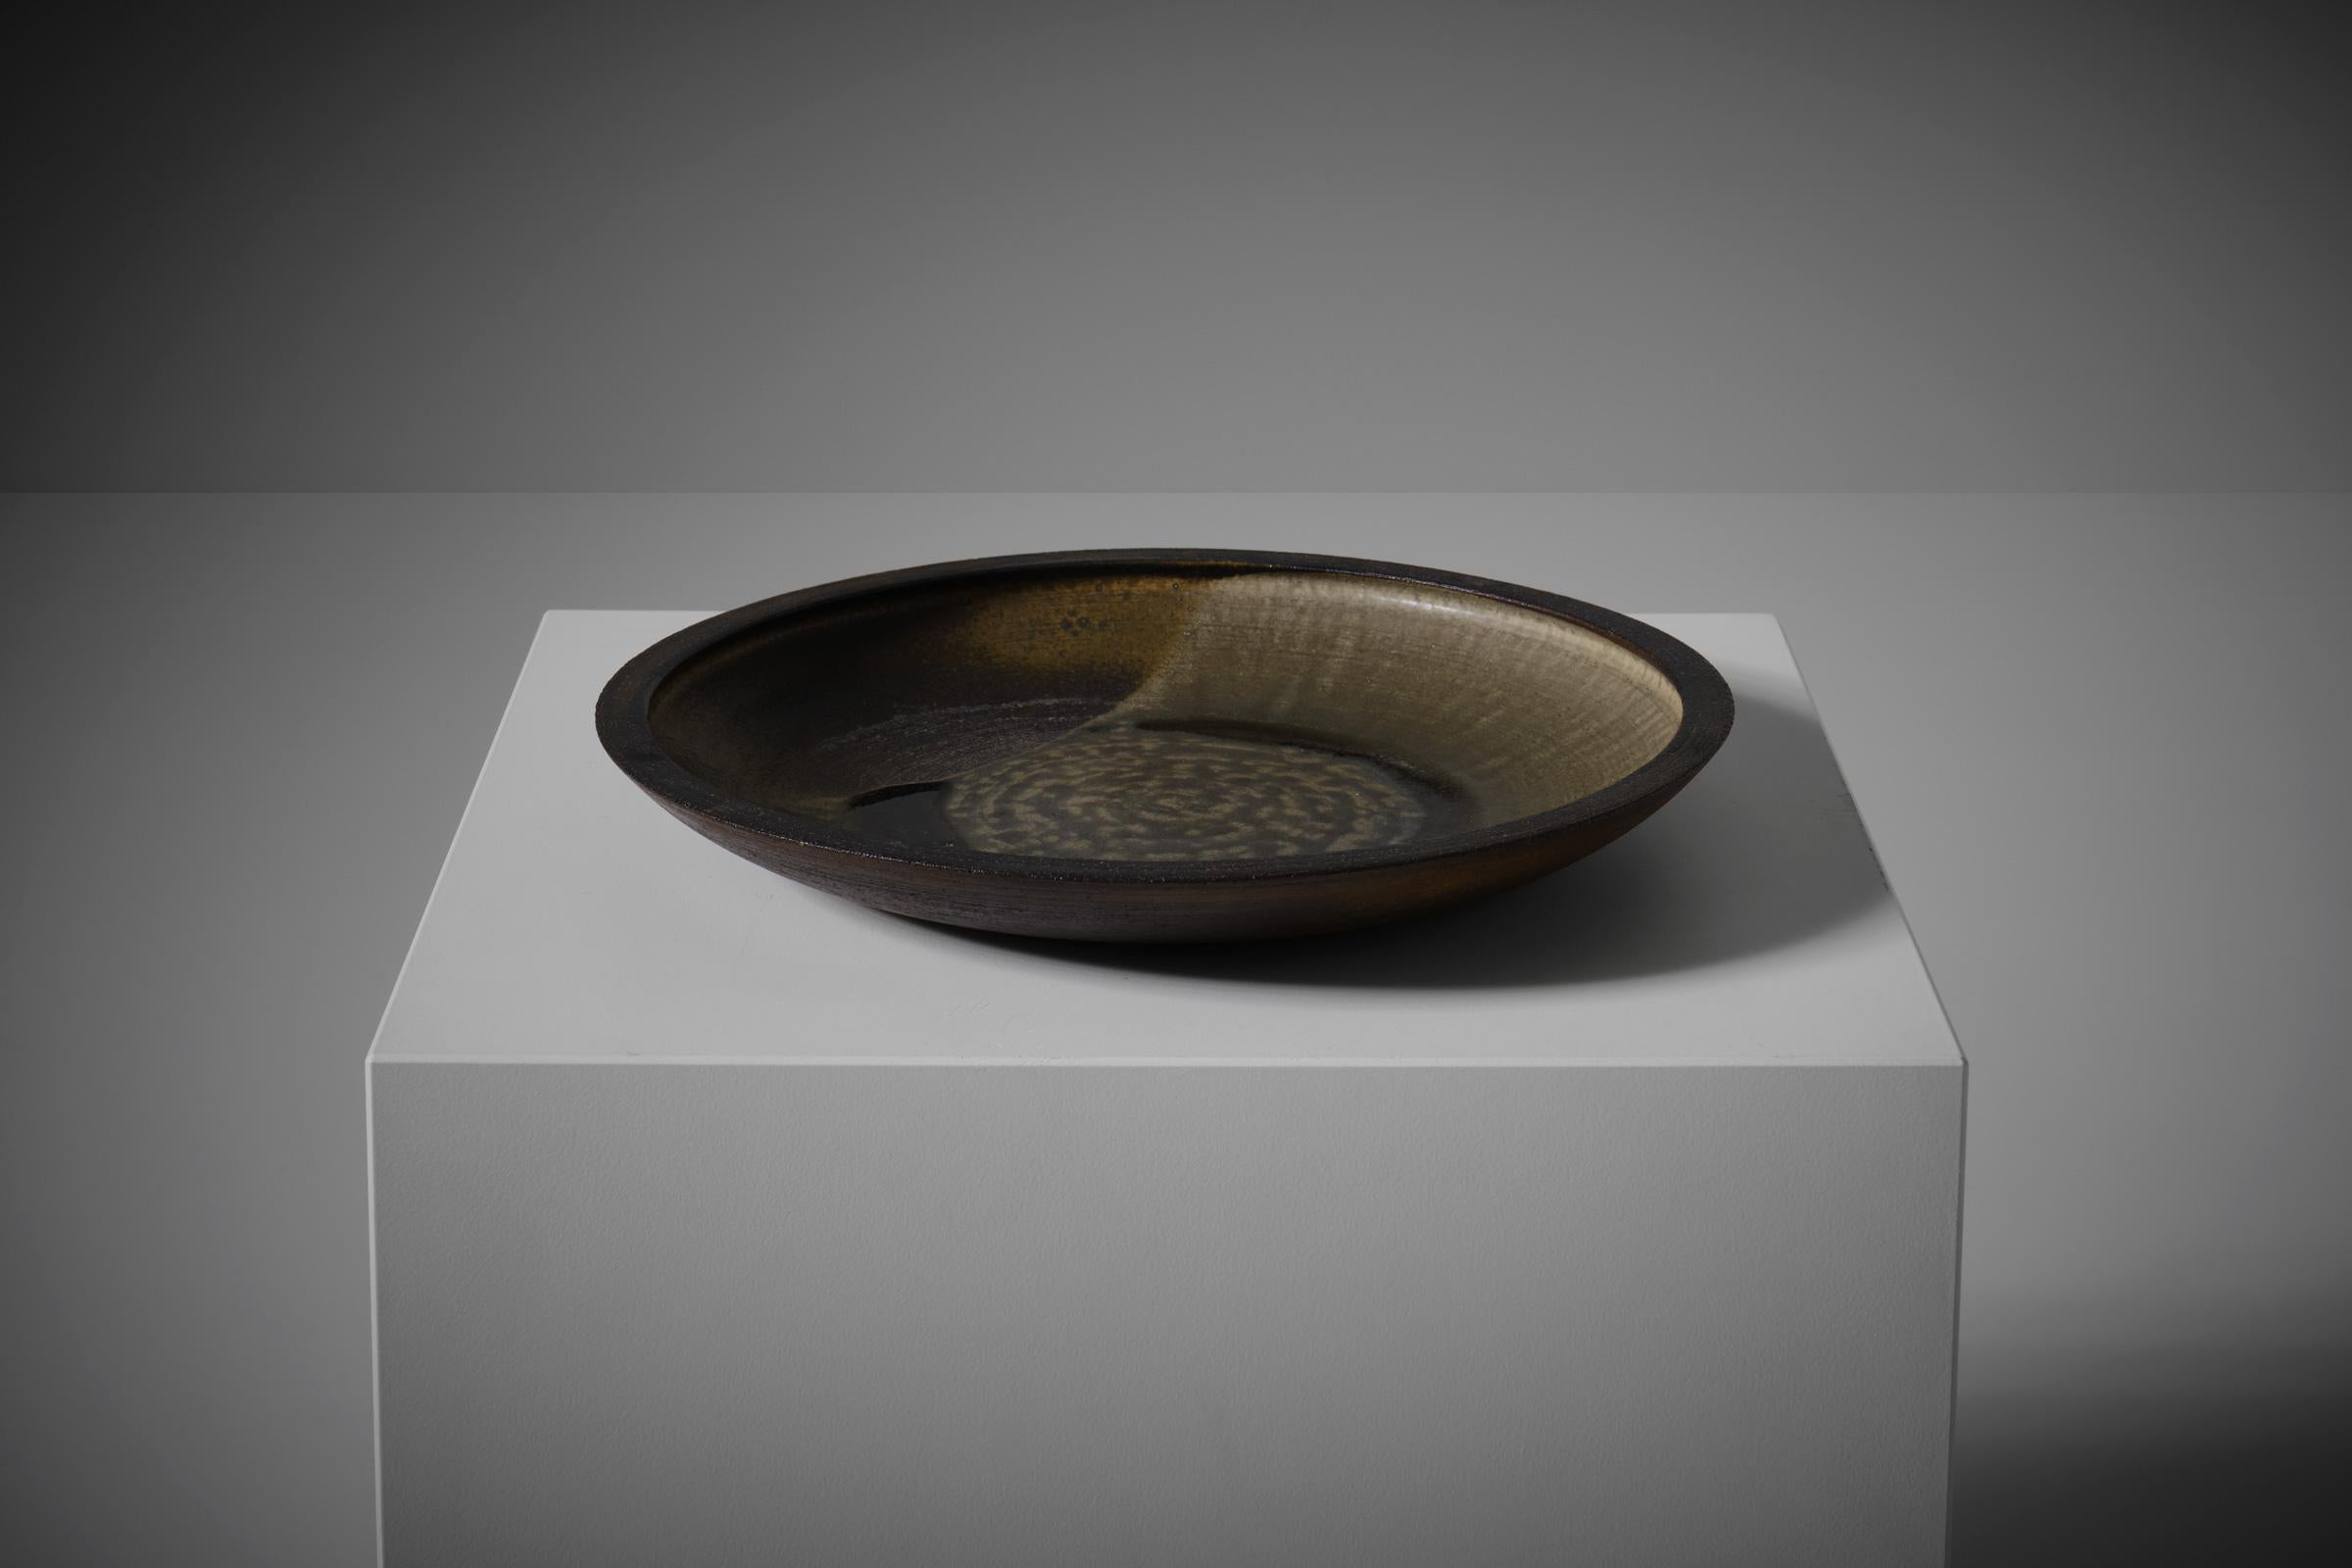 Centre de table en céramique de Nanni Valentini (1932 -1985) pour Ceramica Arcore. Belle décoration expressionniste, typique de Valentini, sur la face intérieure du bol, montrant différentes glaçures et surfaces texturées. La forme du bol évoque un